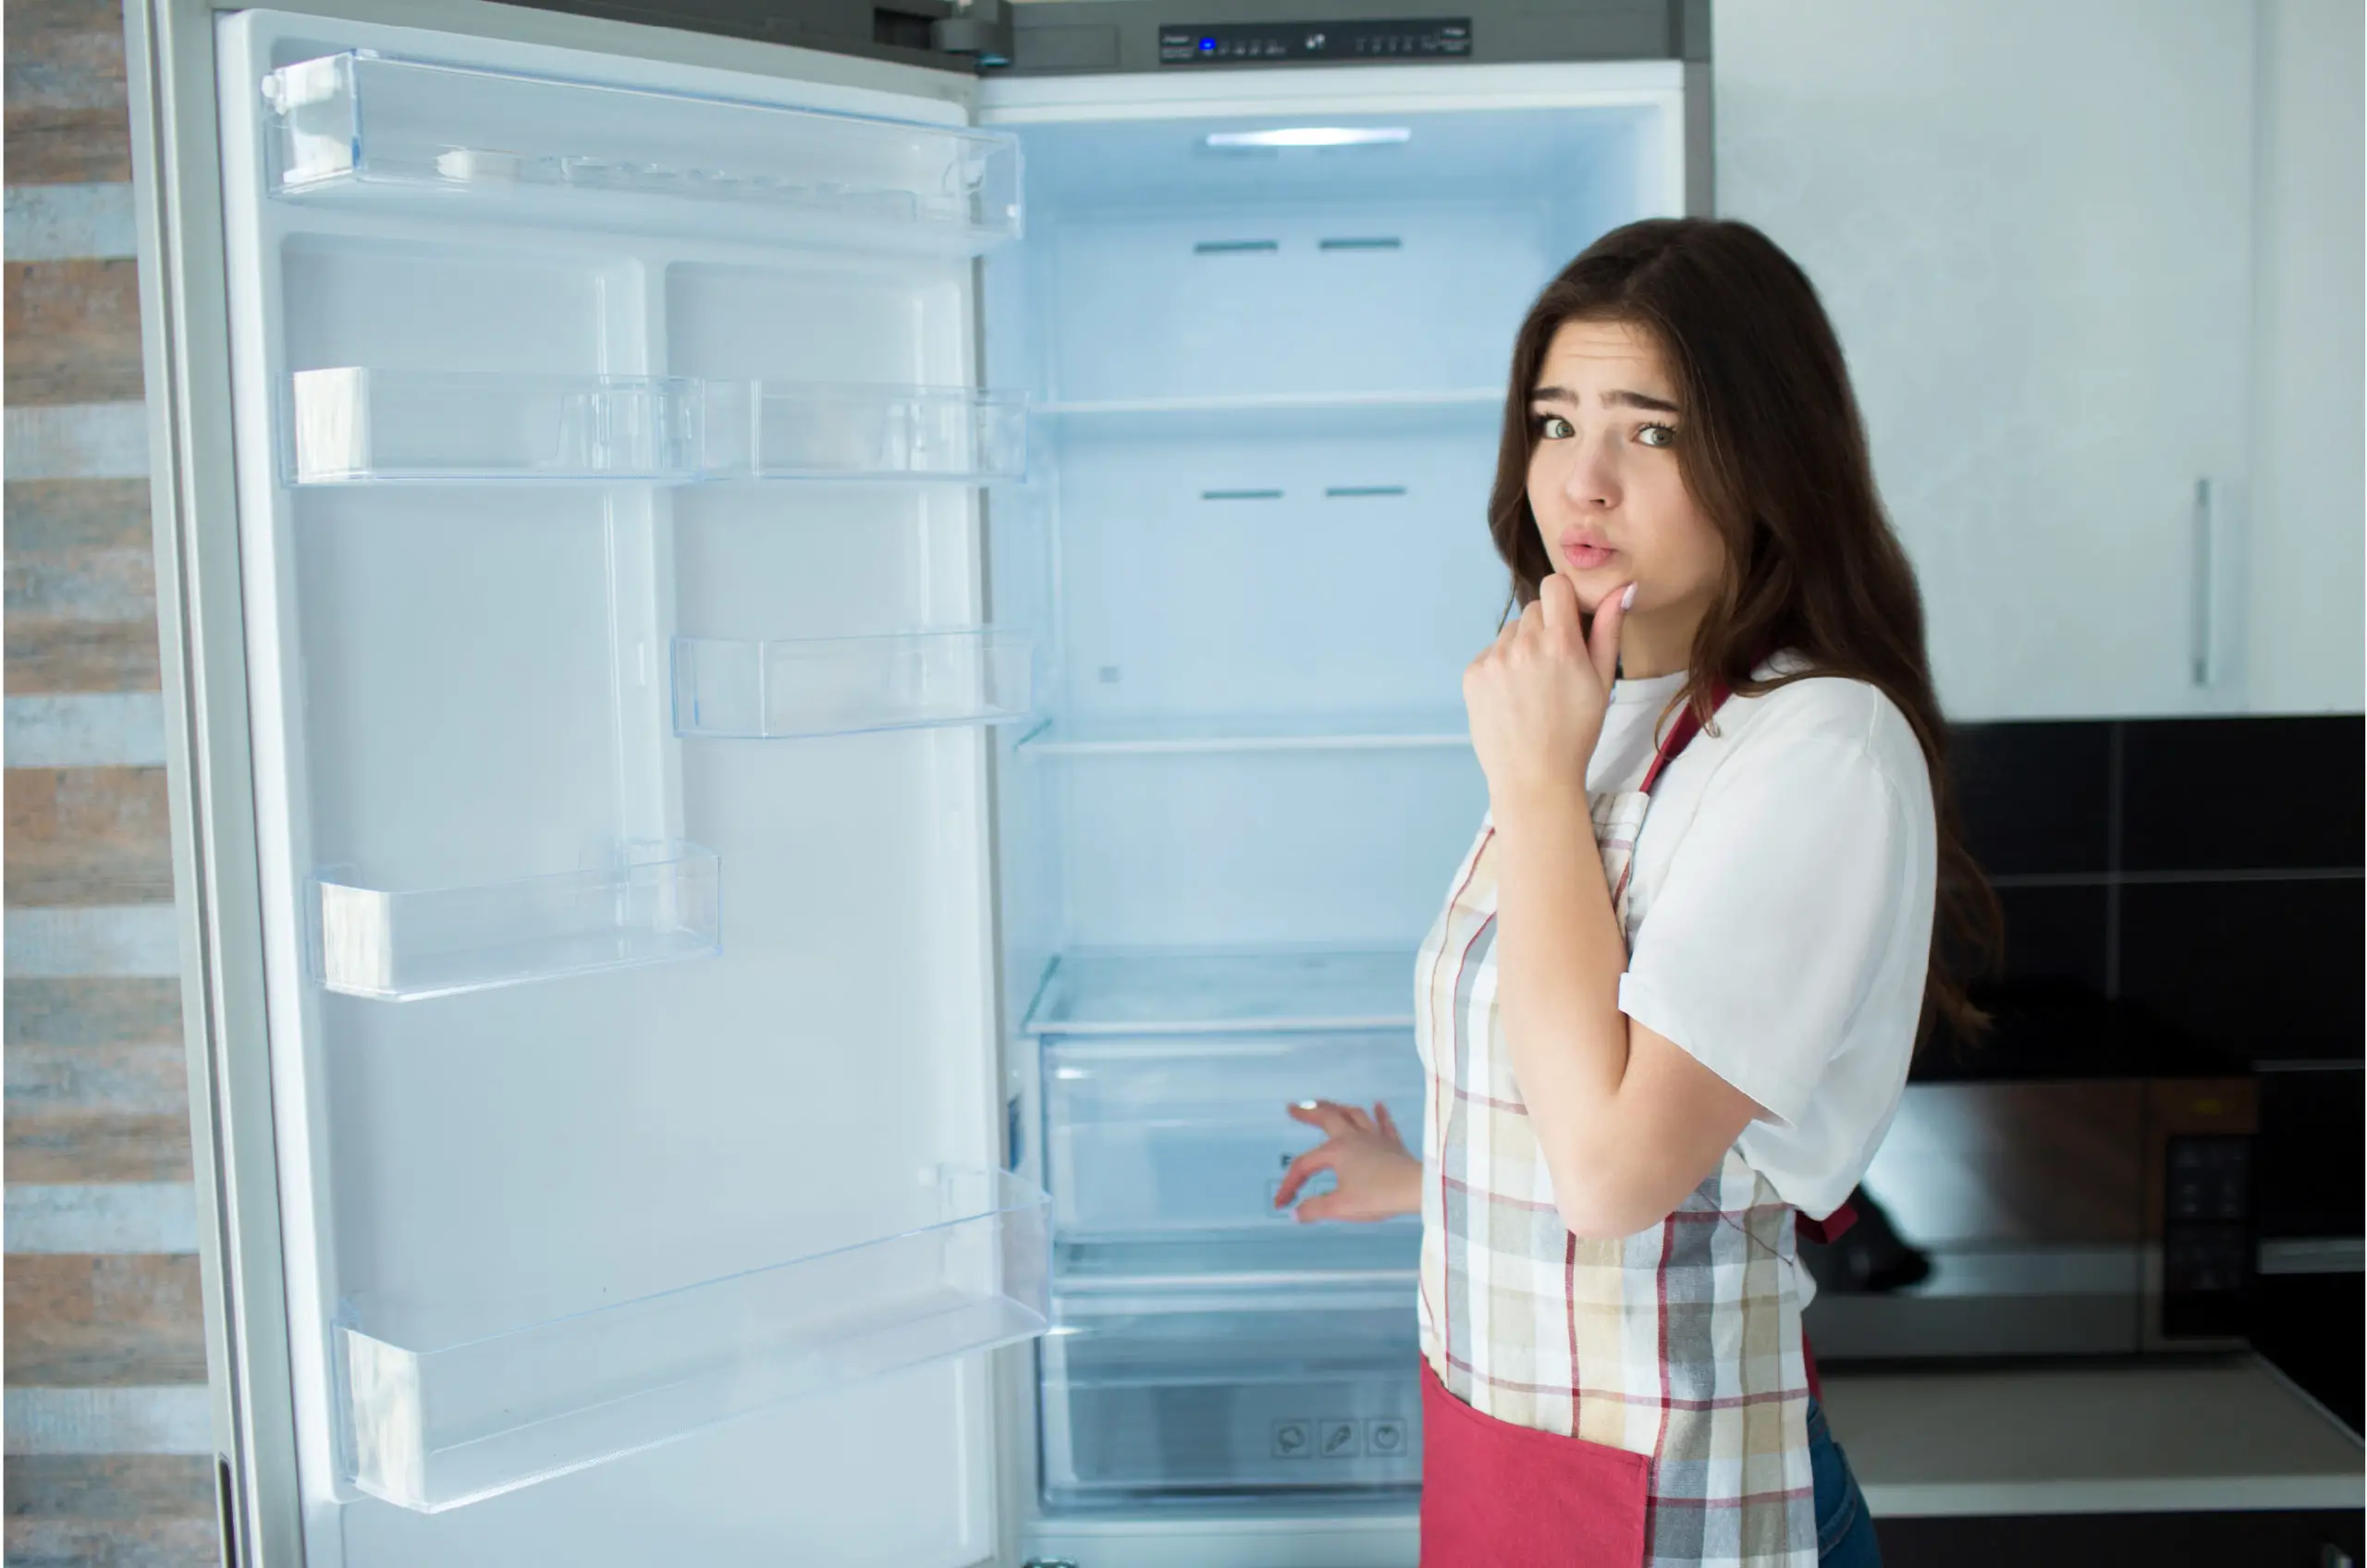 vrouw staat voor een lege open koelkast